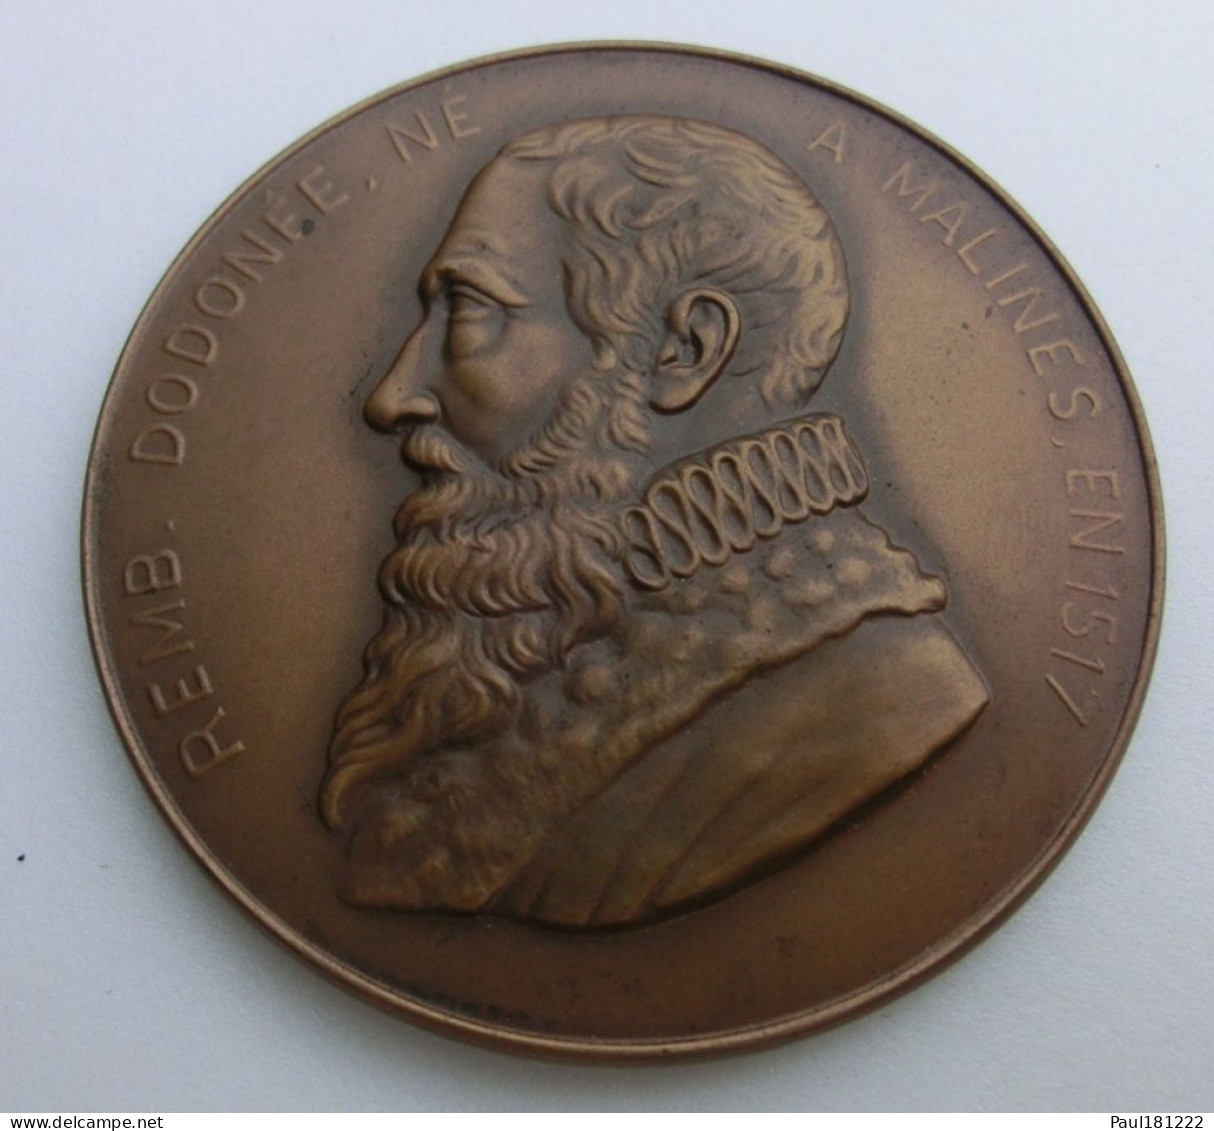 Médaille, Bronze, Rembert Dodonée, Dodoens, Van Joenckema, Malines, 1517, Congrès National Des Sciences Bruxelles 1950 - Professionali / Di Società